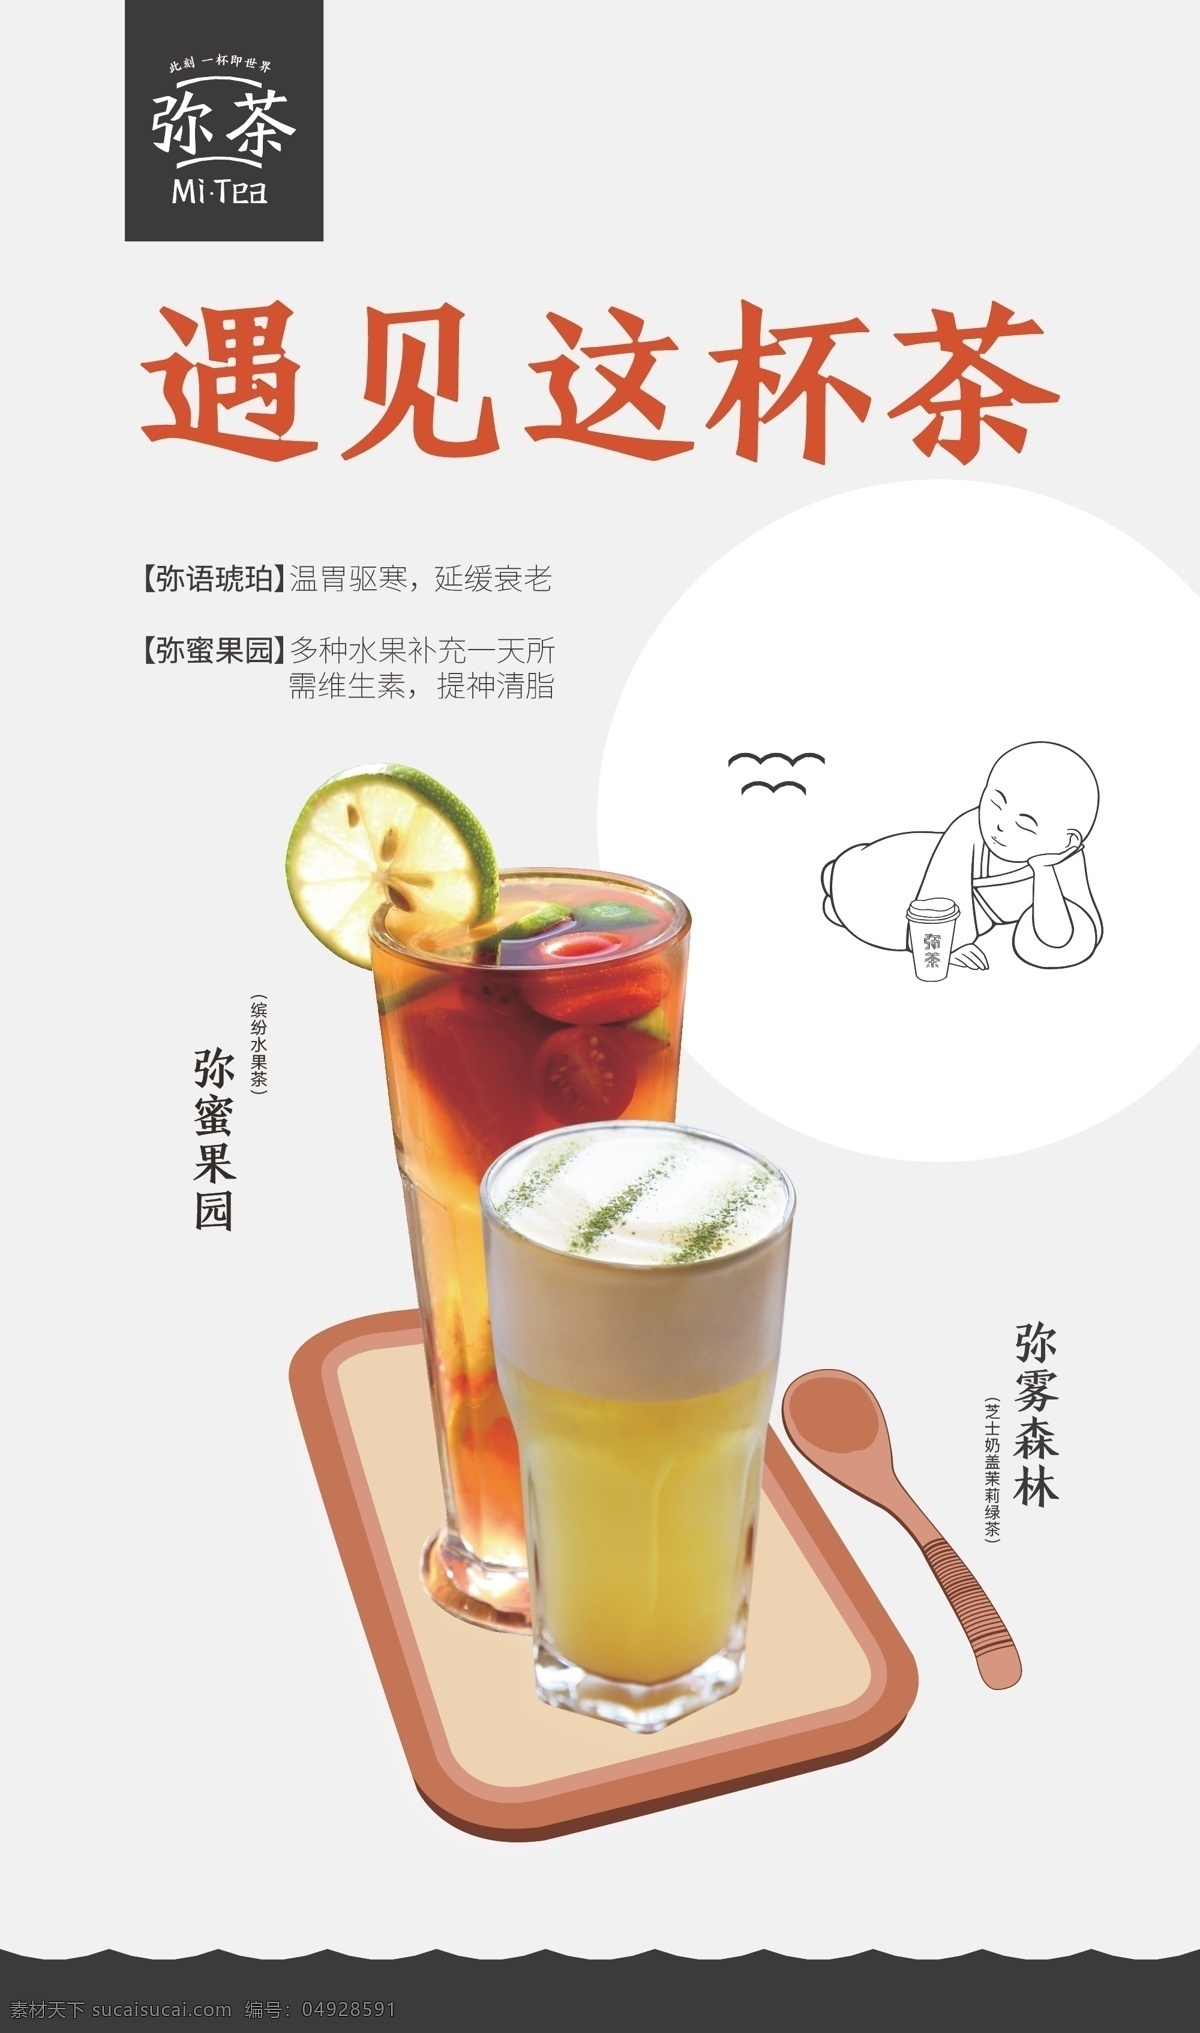 饮料海报 弥茶 tea 饮料 海报 水果饮料